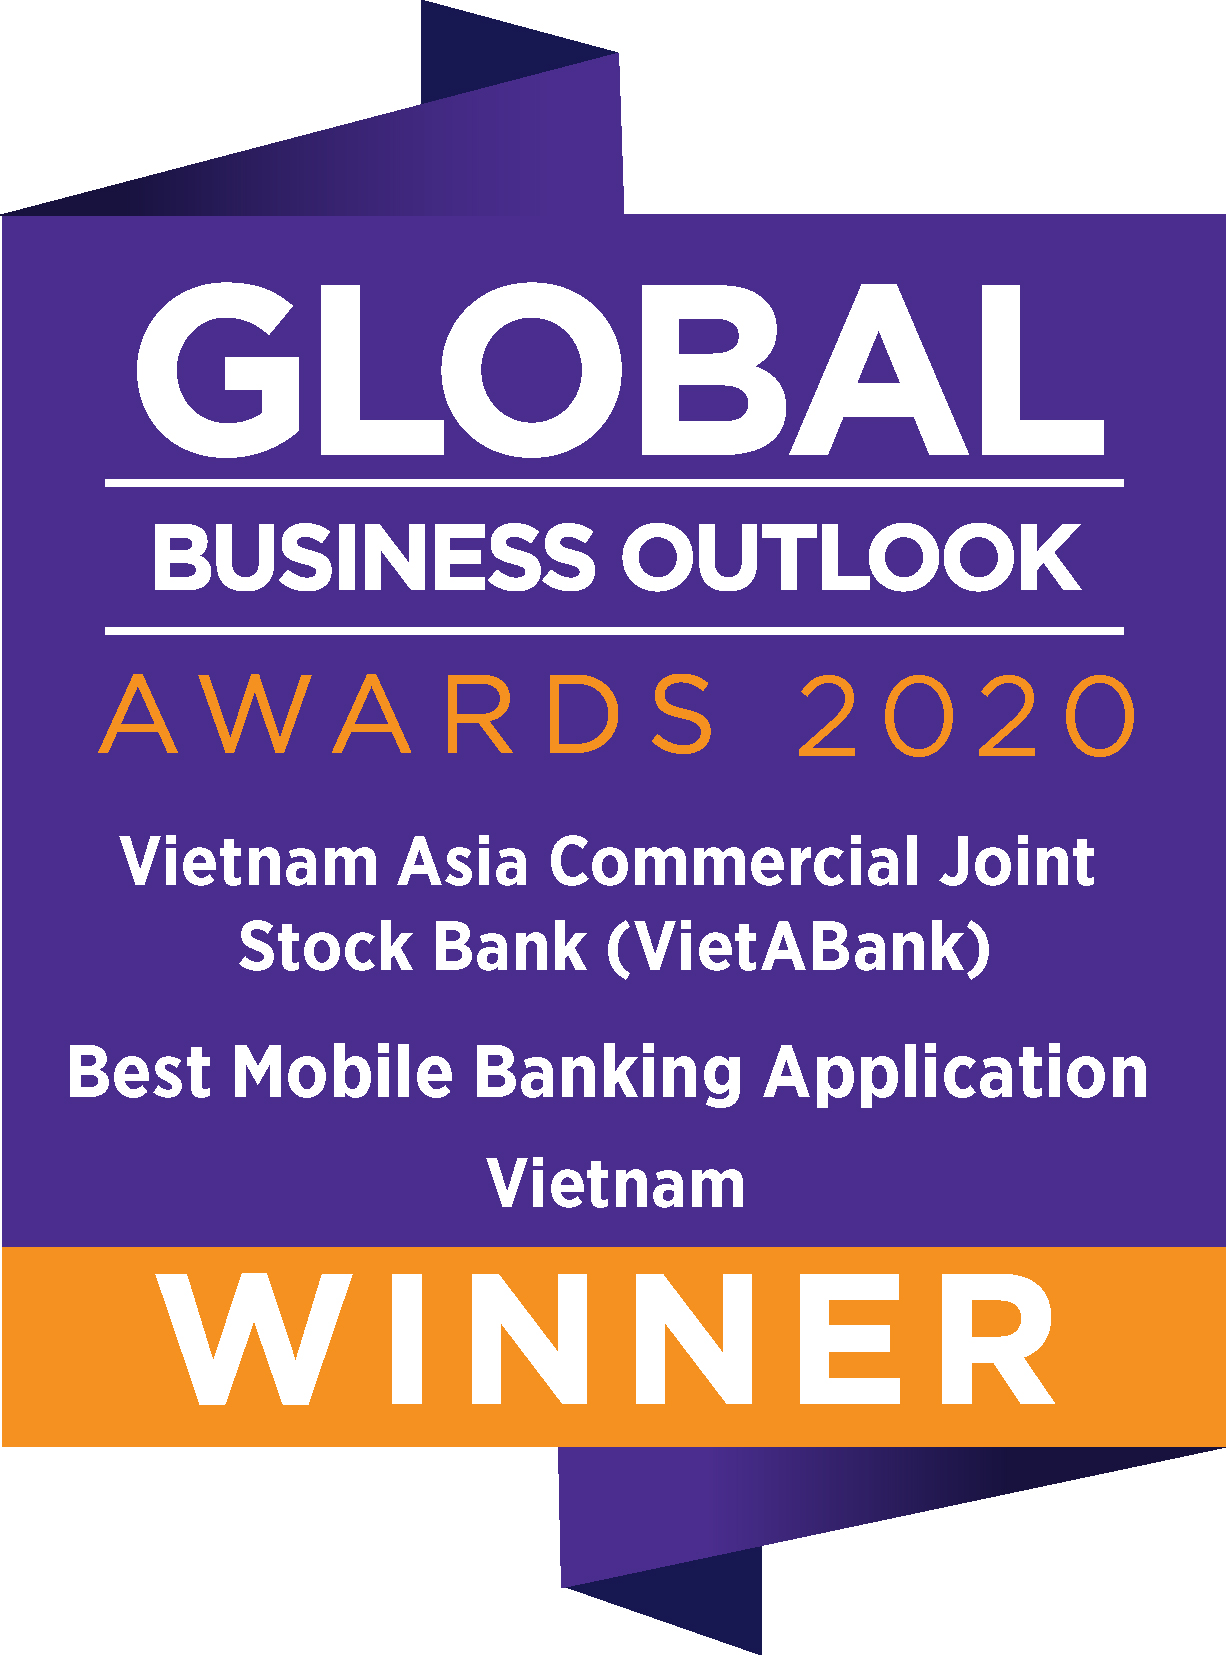 Best Mobile Banking Application Vietnam 2020 - Ngân hàng có ứng dụng di động tốt nhất Việt Nam 2020